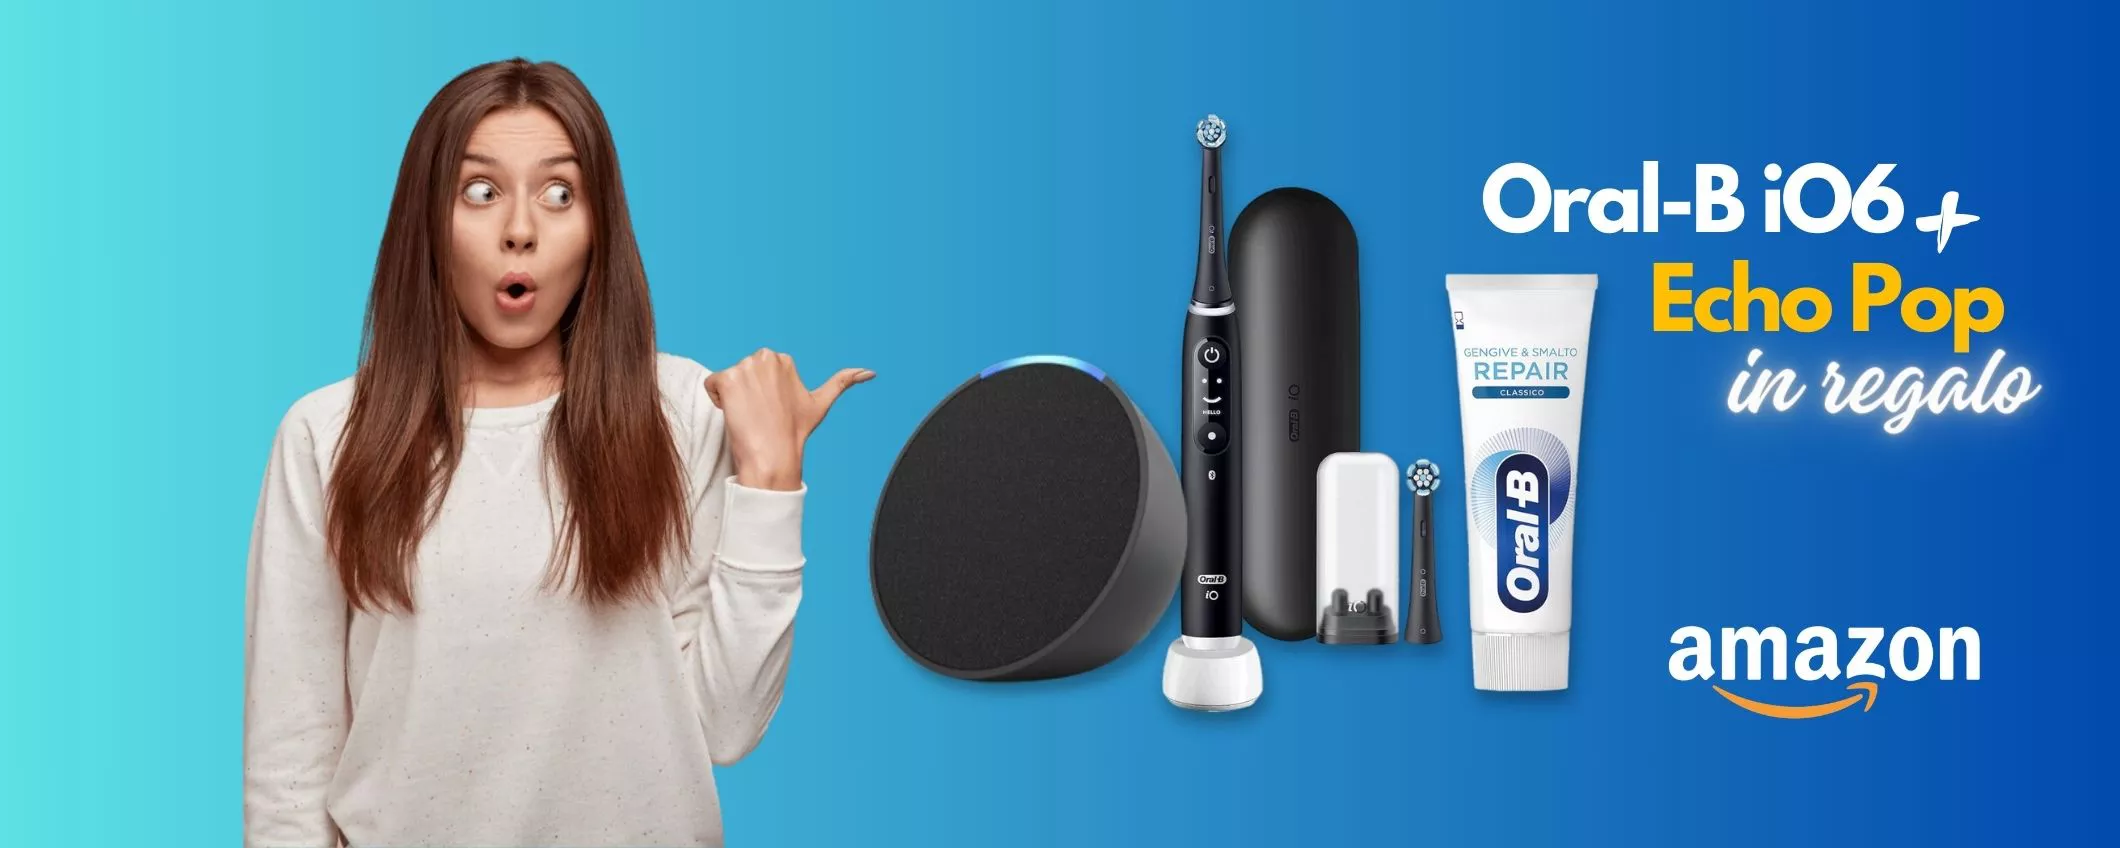 Lo spazzolino elettrico Oral-B iO6 ti REGALA Echo Pop con Alexa: scopri l'offerta